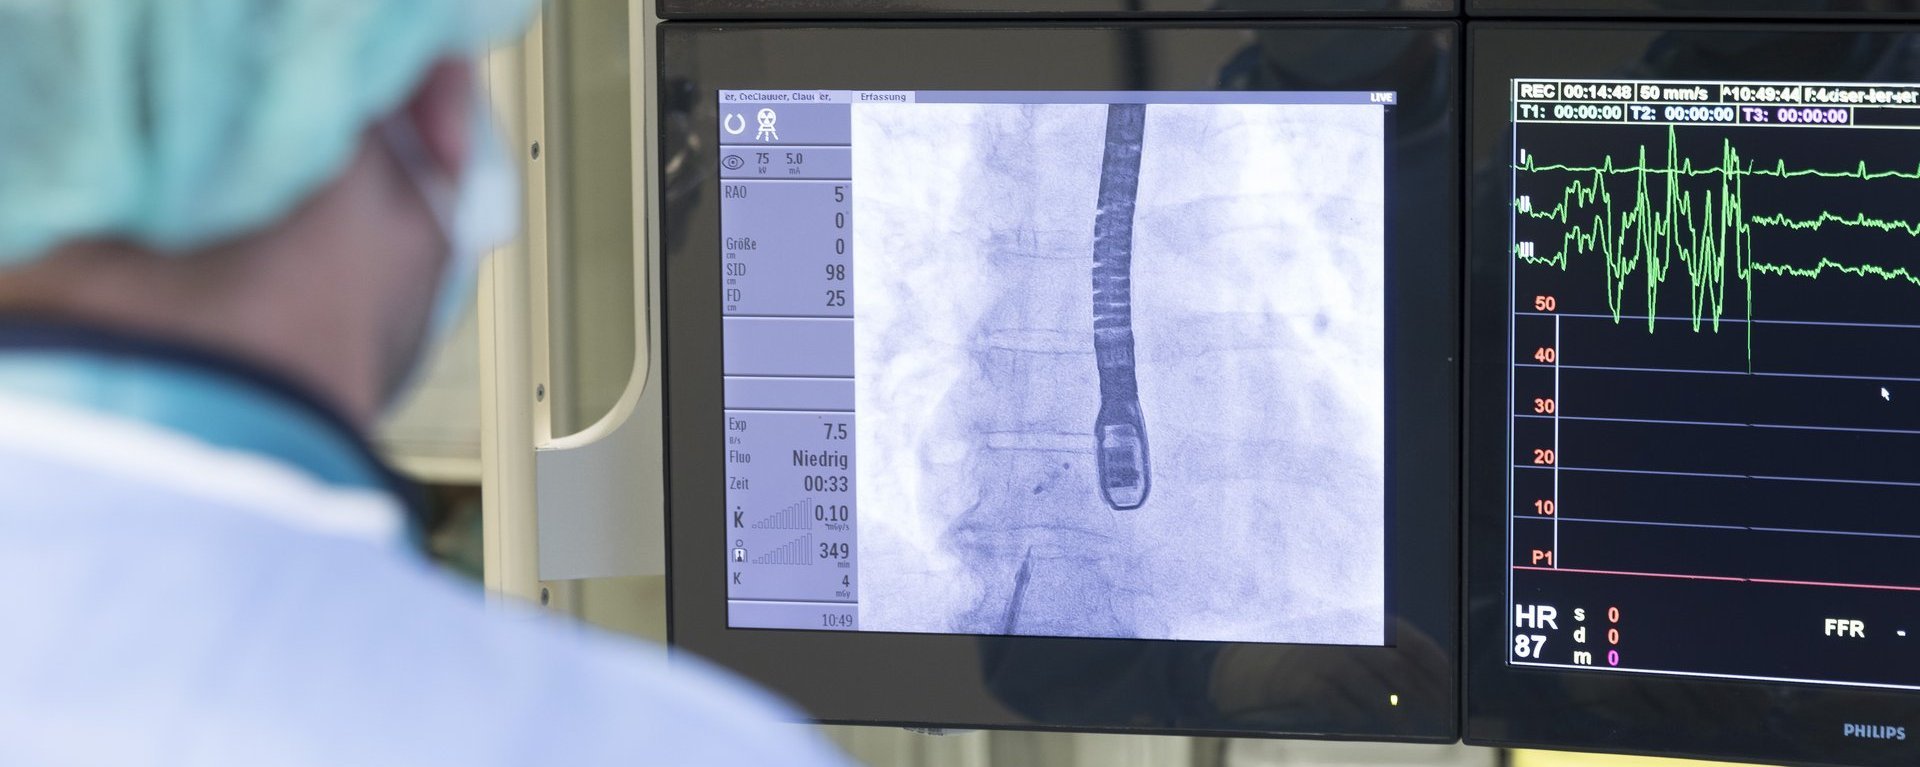 Ein Arzt schaut auf einige Monitore mit Werten und Aufnahmen des Herzens.